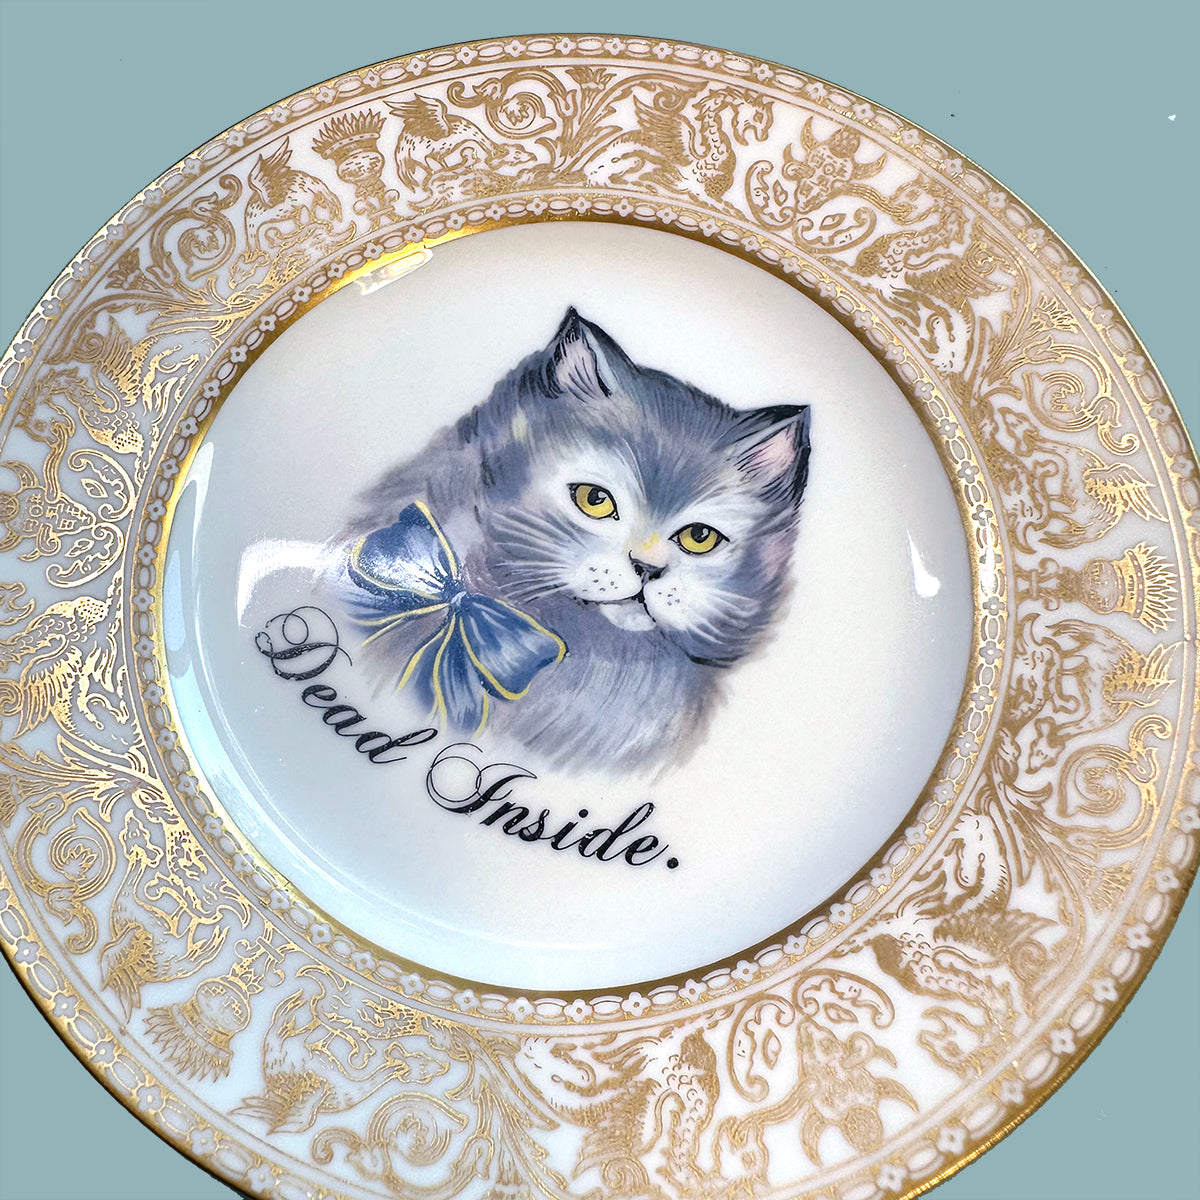 Vintage Art Plate - Cat plate - "Dead Inside"